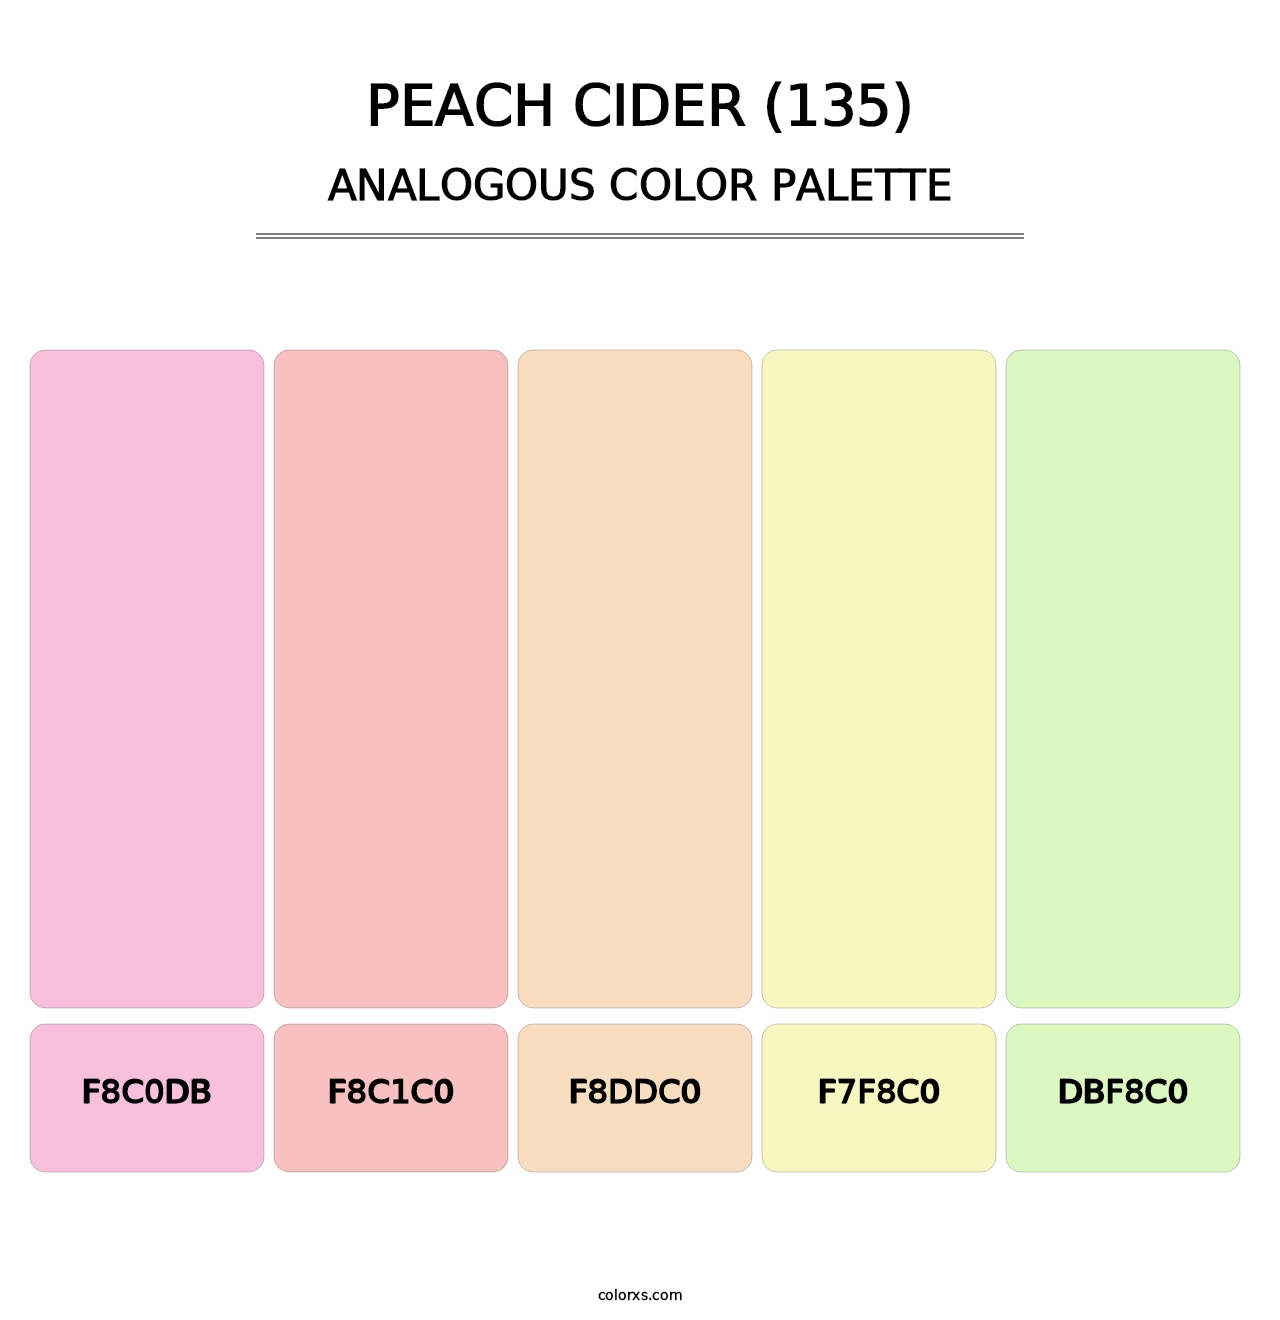 Peach Cider (135) - Analogous Color Palette